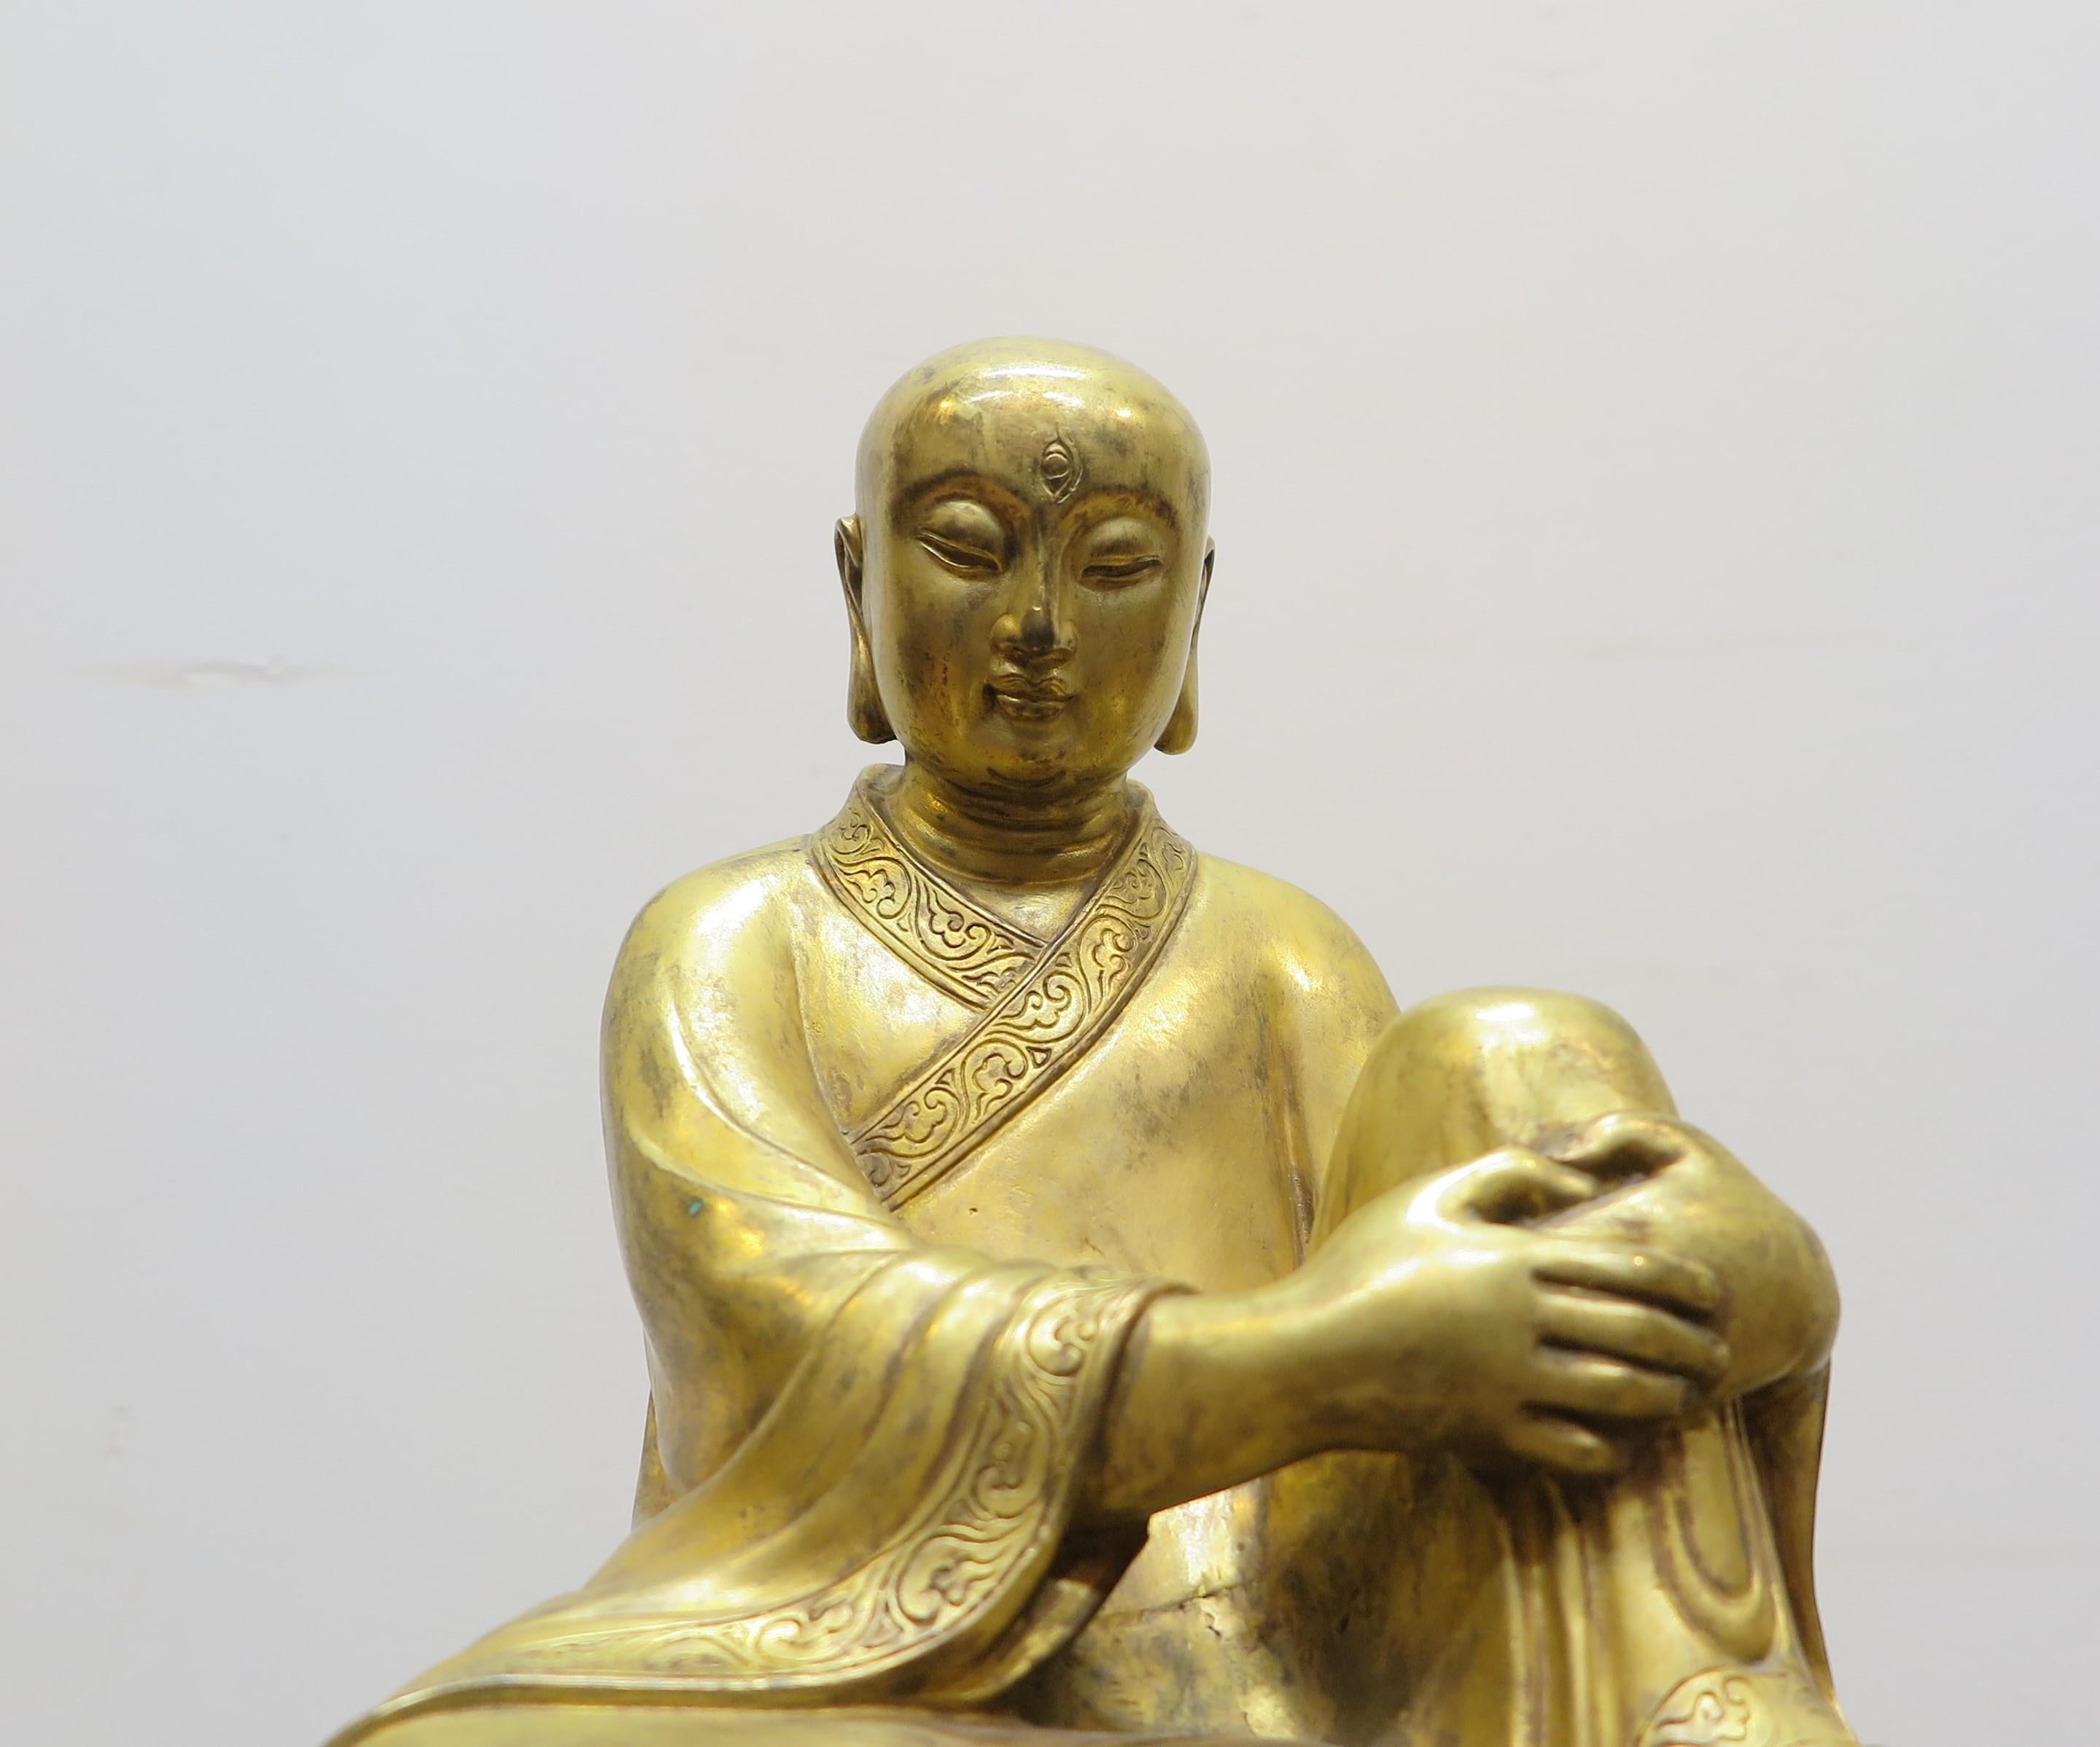 Statue de Bouddha en bronze doré. Moulage serein du Bouddha éclairé, moine bouddhiste assis sur un banc d'autel. Une capture très sensible et détaillée en bronze doré à la feuille d'or 24 carats. Un visage exquis. Une gravure détaillée entoure le